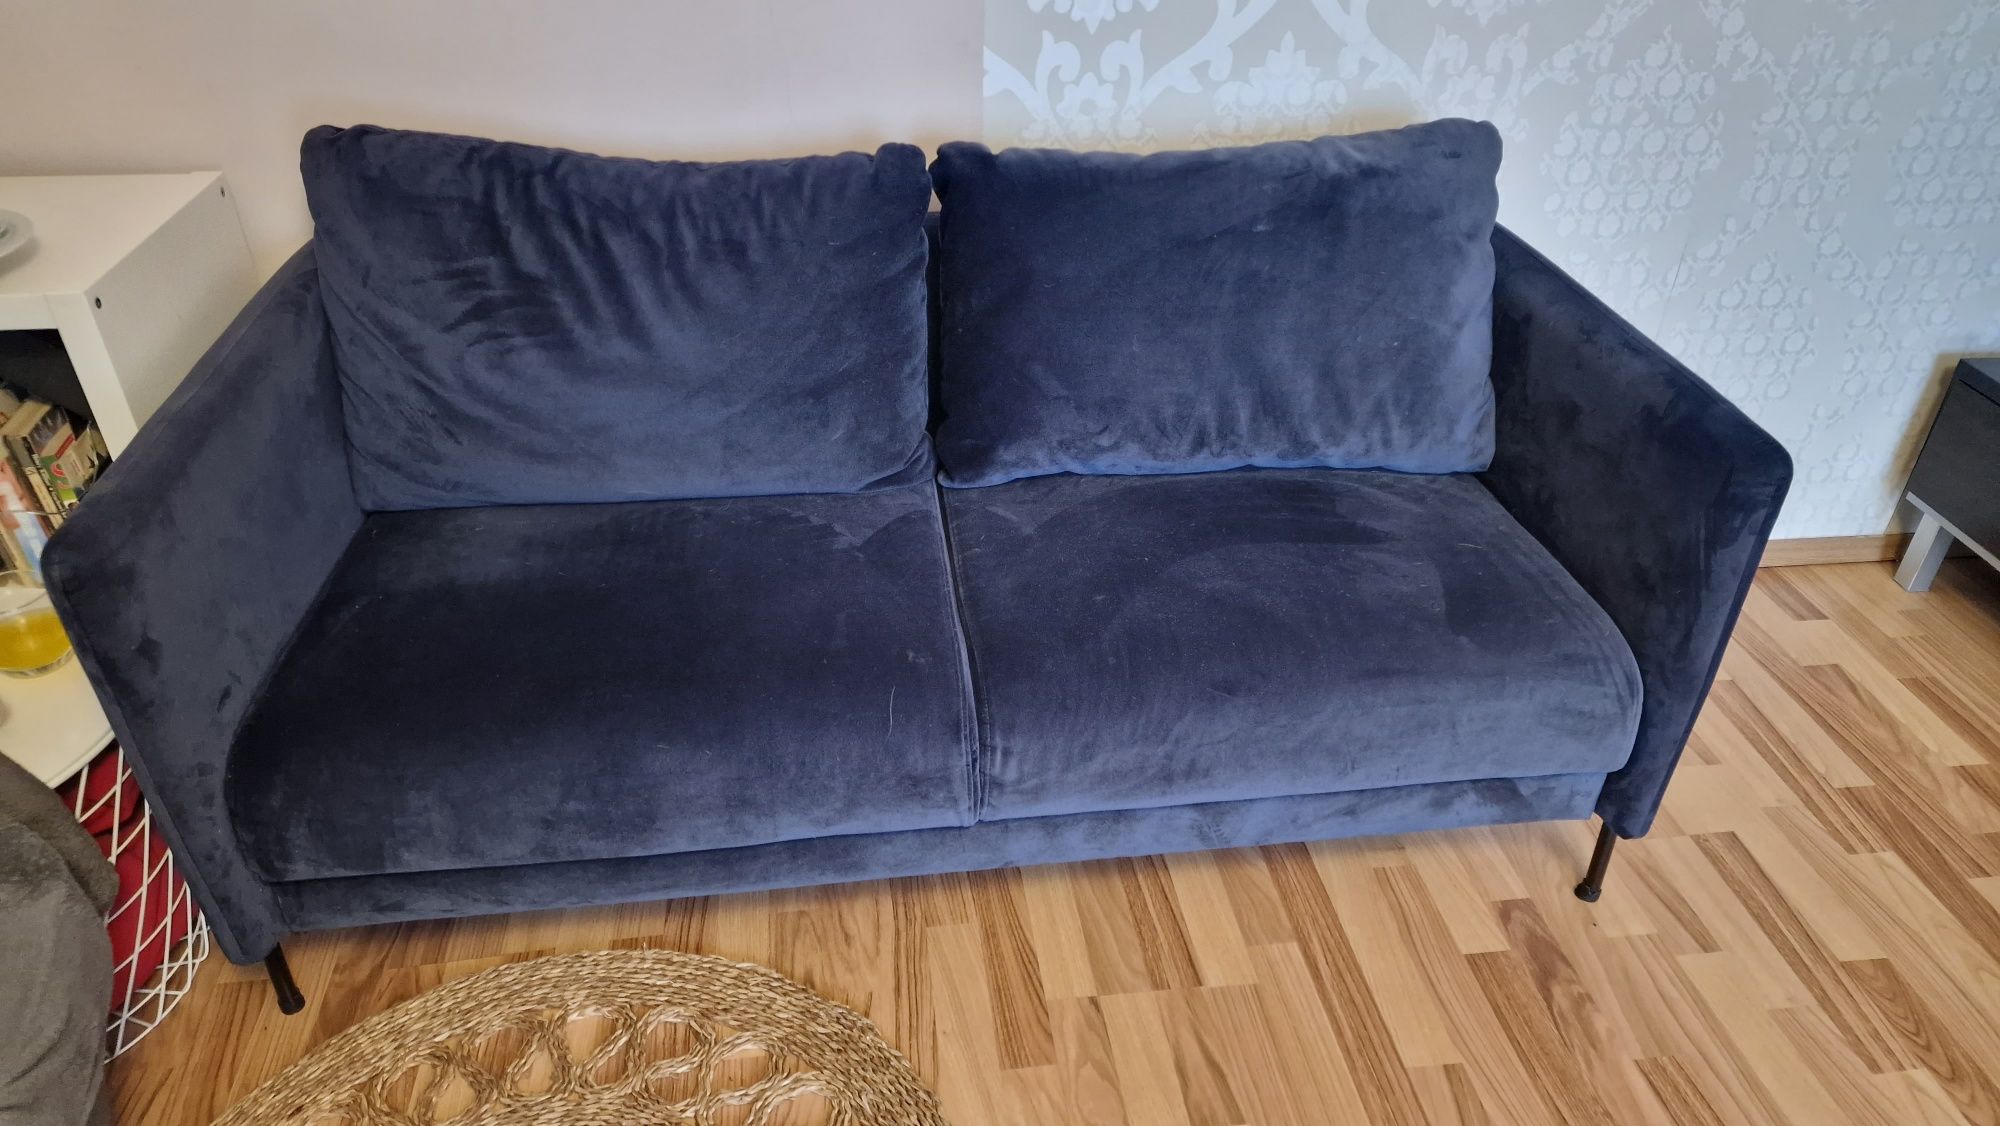 Kanapa,Sofa w stylu skandynawskim  Dwuosobowa Jak NOWA